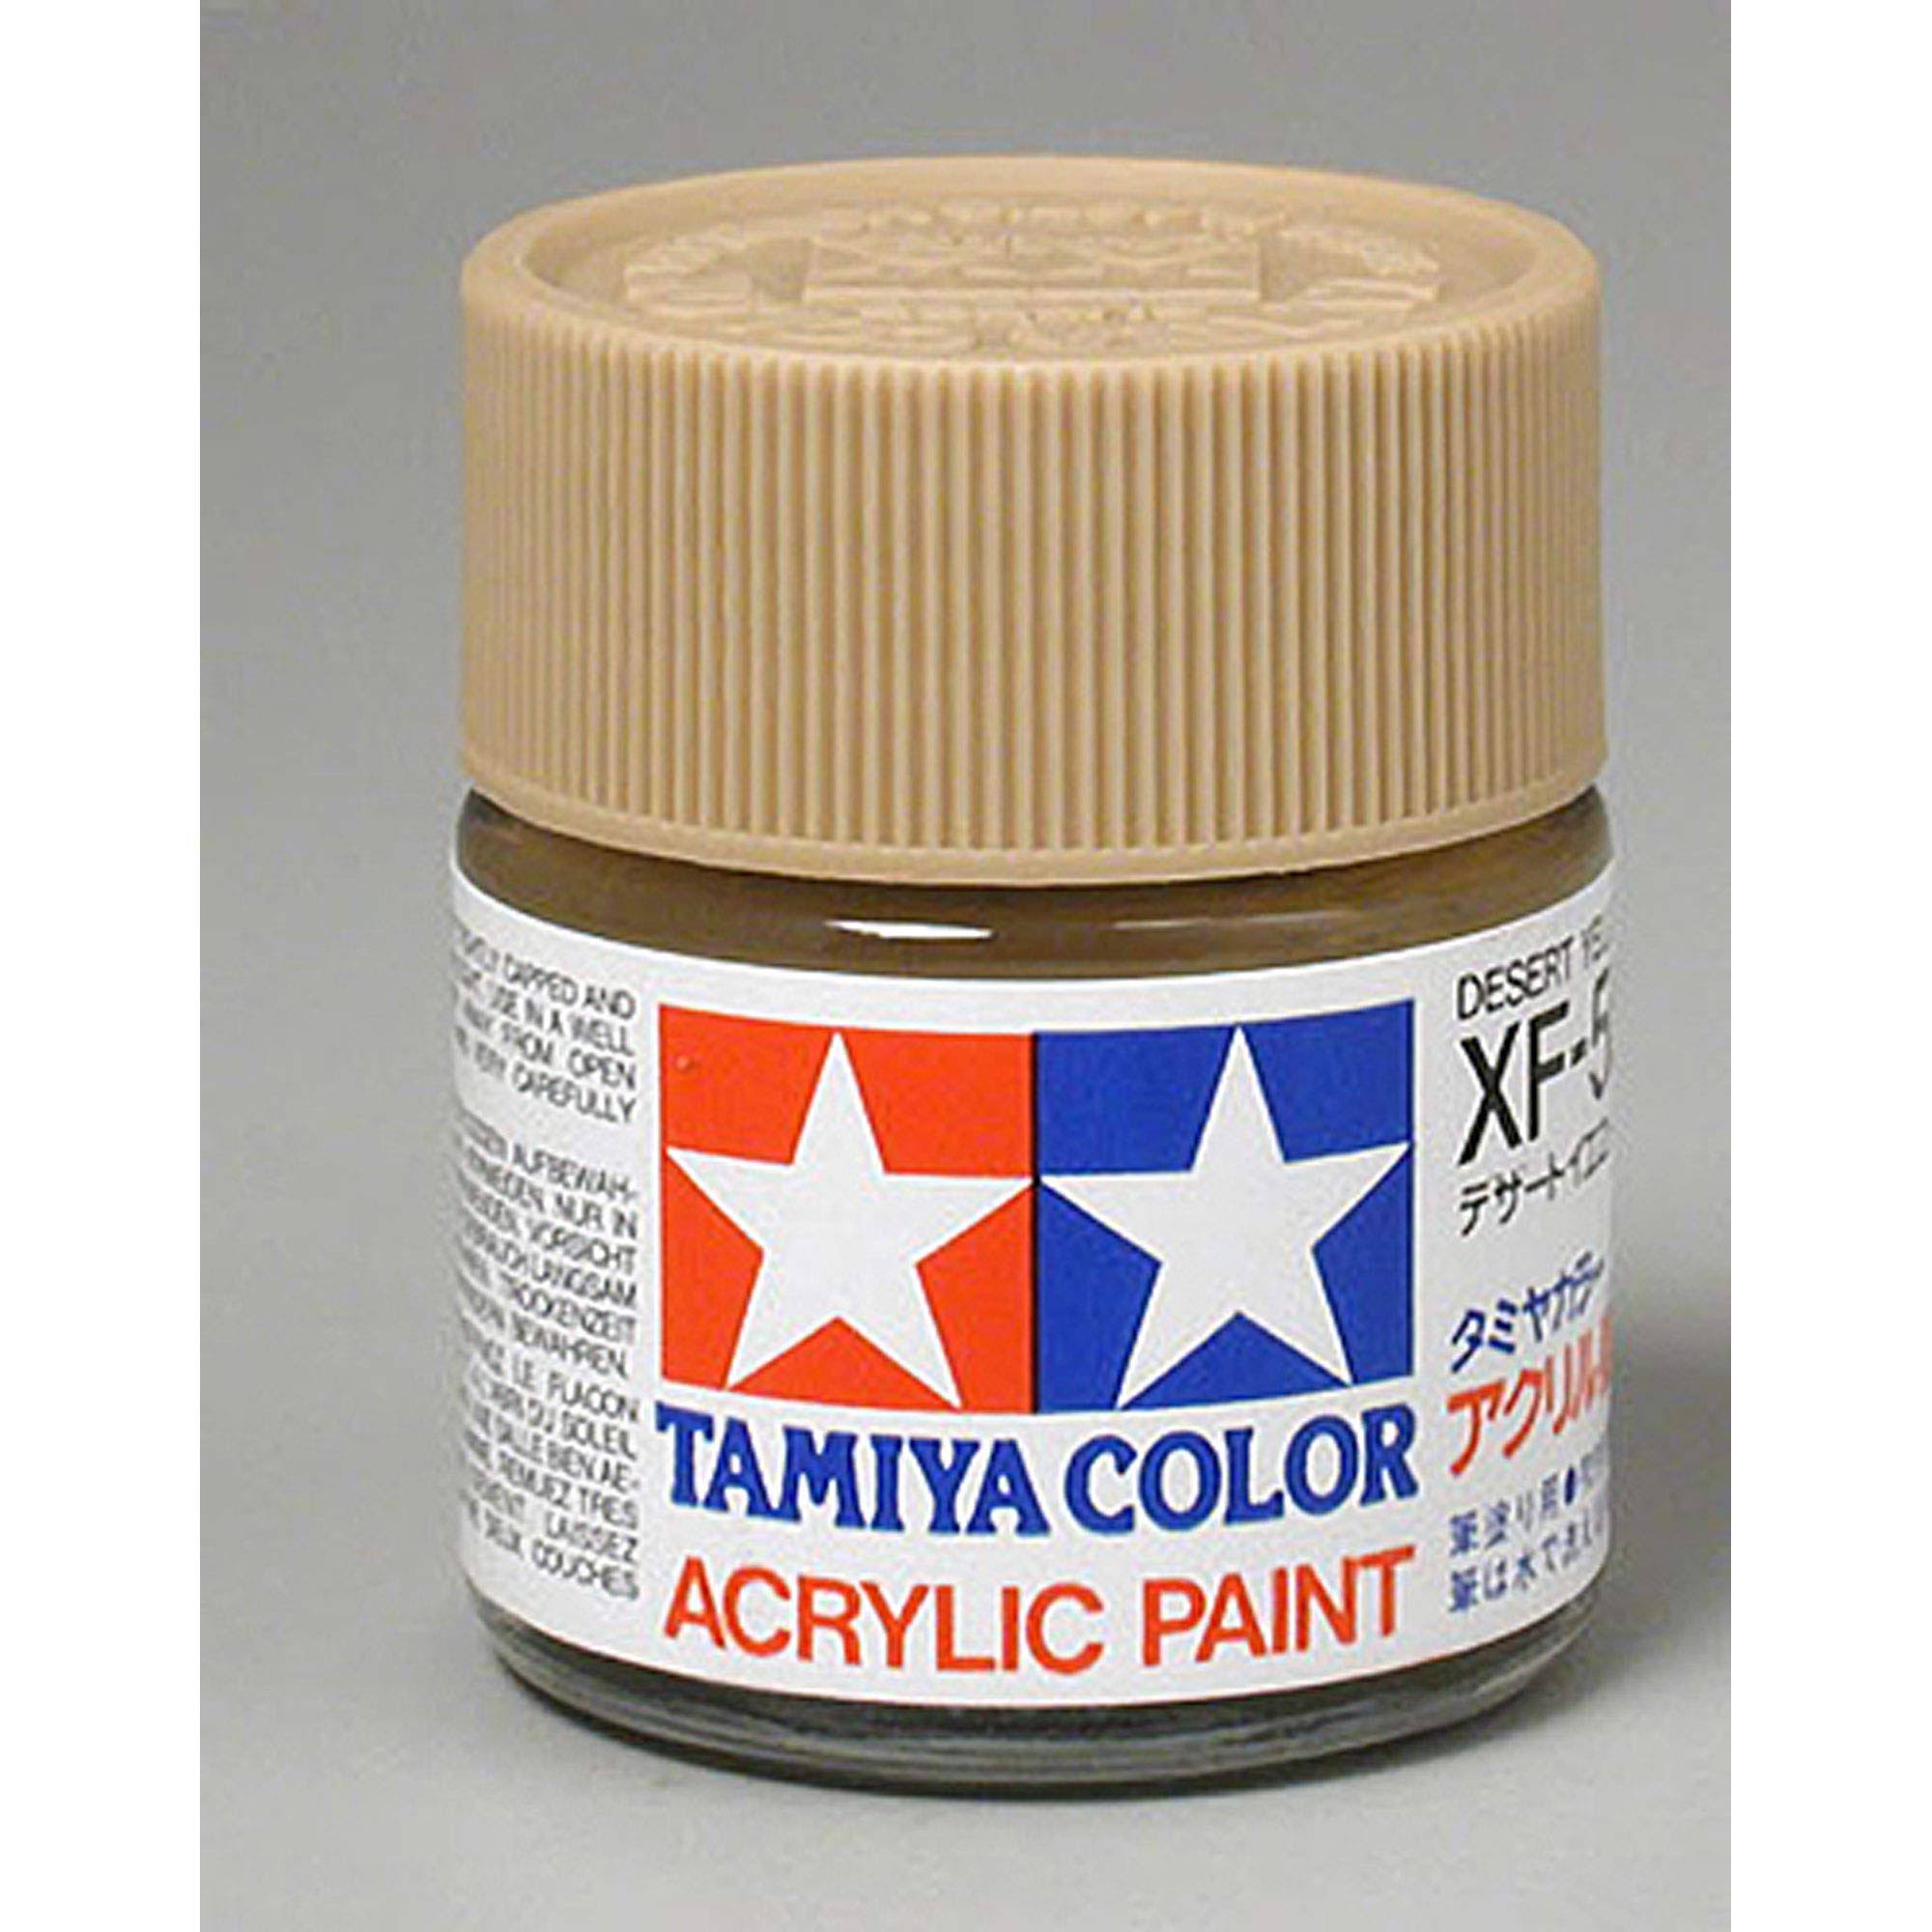 Tamiya 81359 XF-59 - Acrylic Paint Desert Yellow 23 ml